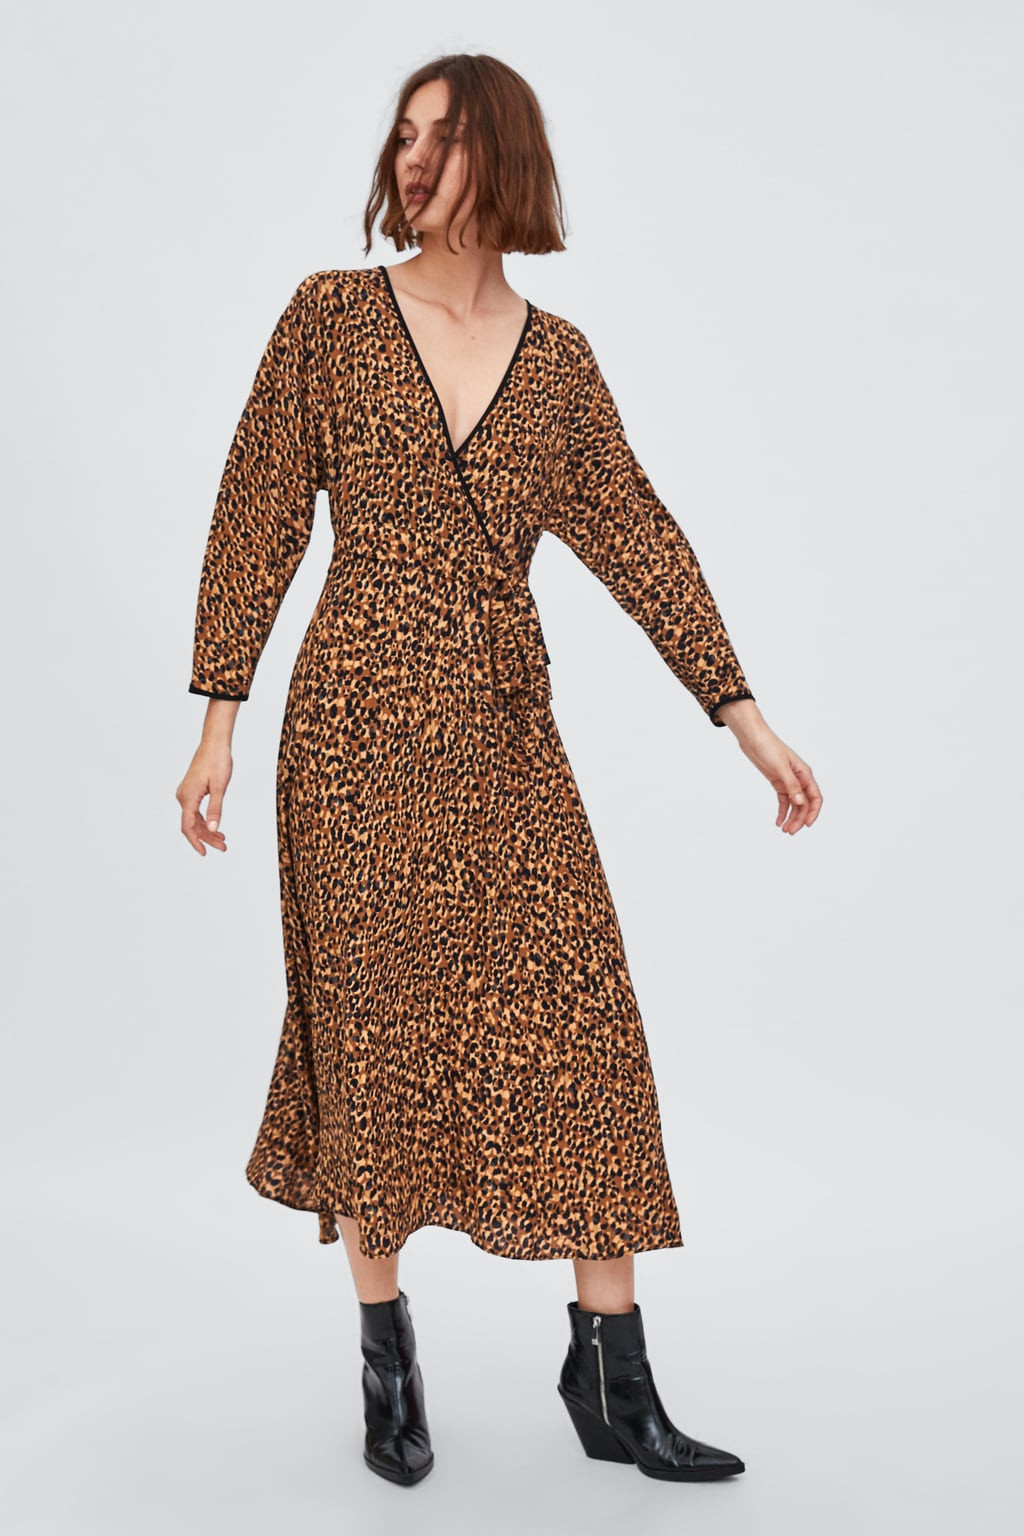 Vestido com estampado animal print , Zara, 29,95 euros.jpg